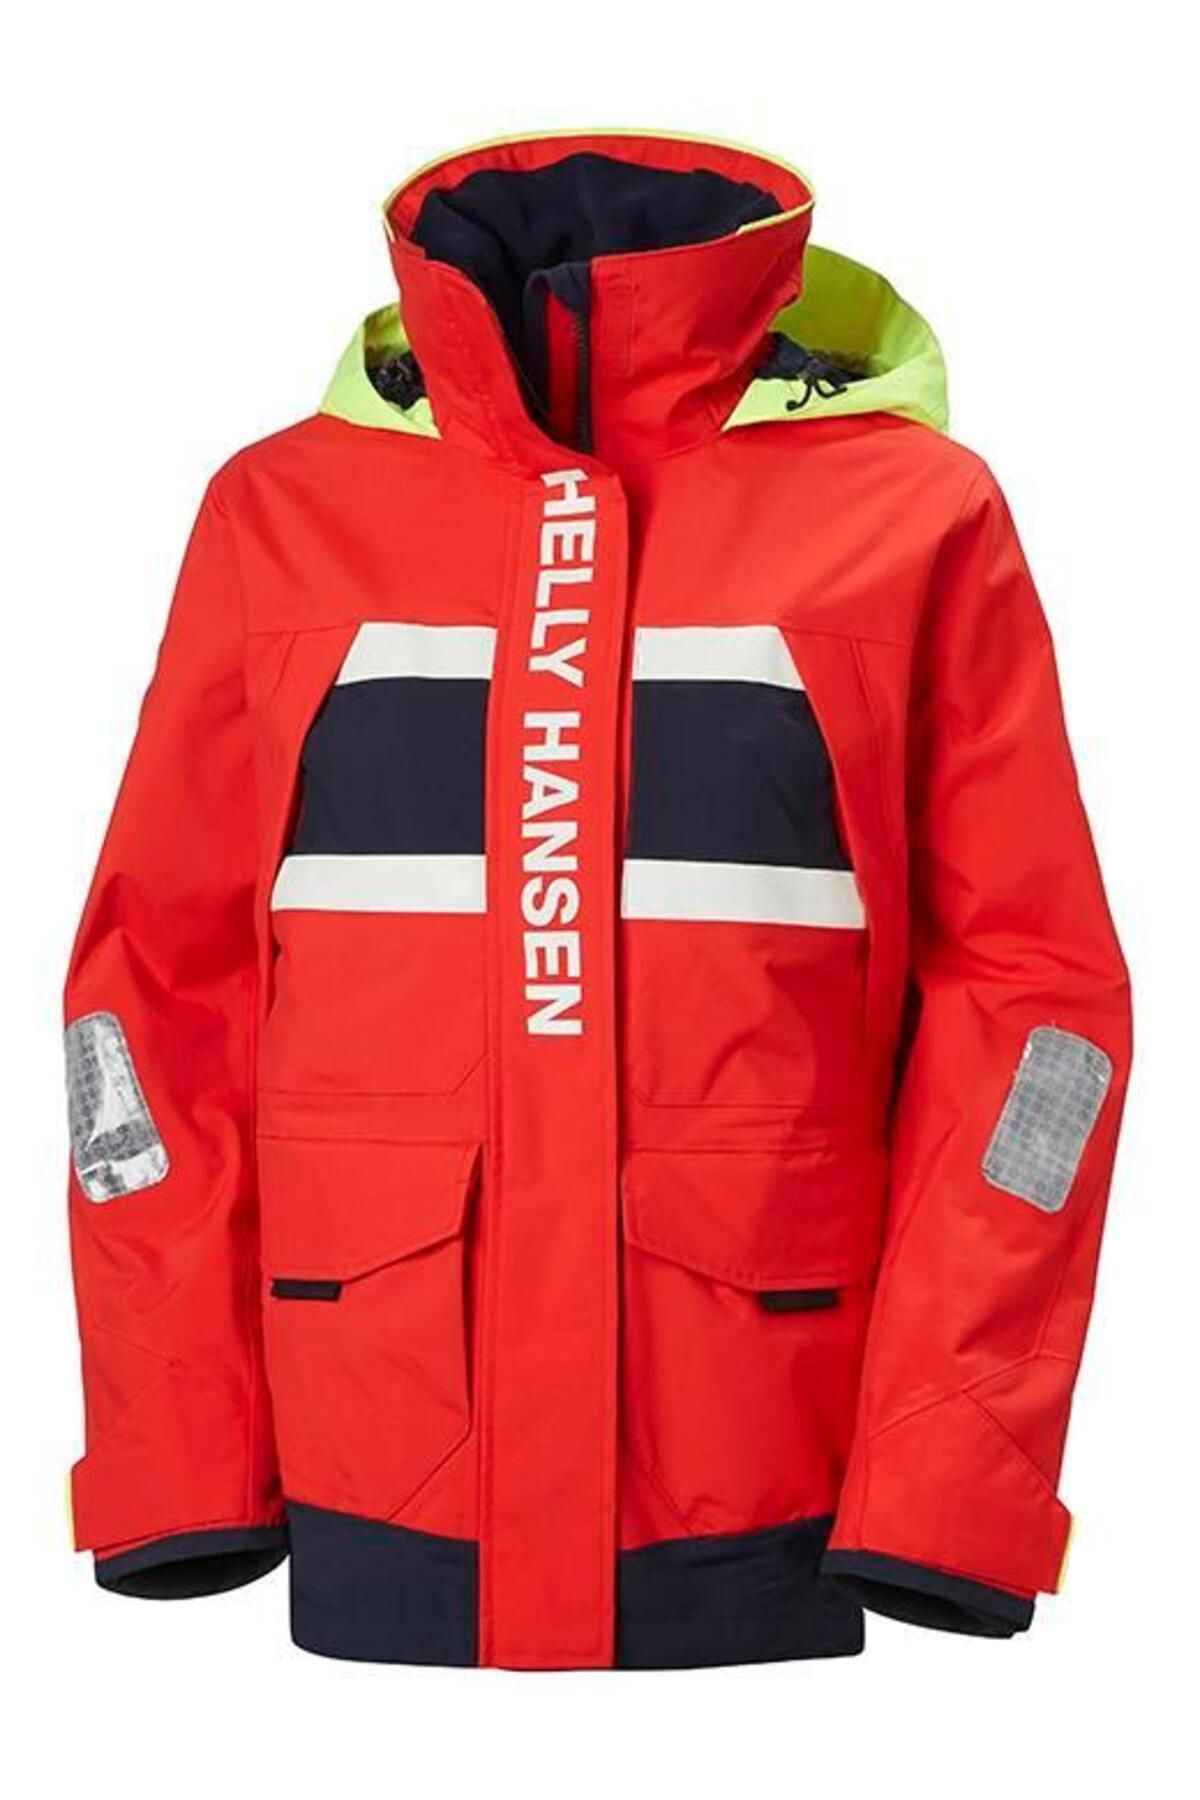 Helly Hansen Hh W Salt Coastal Jacket